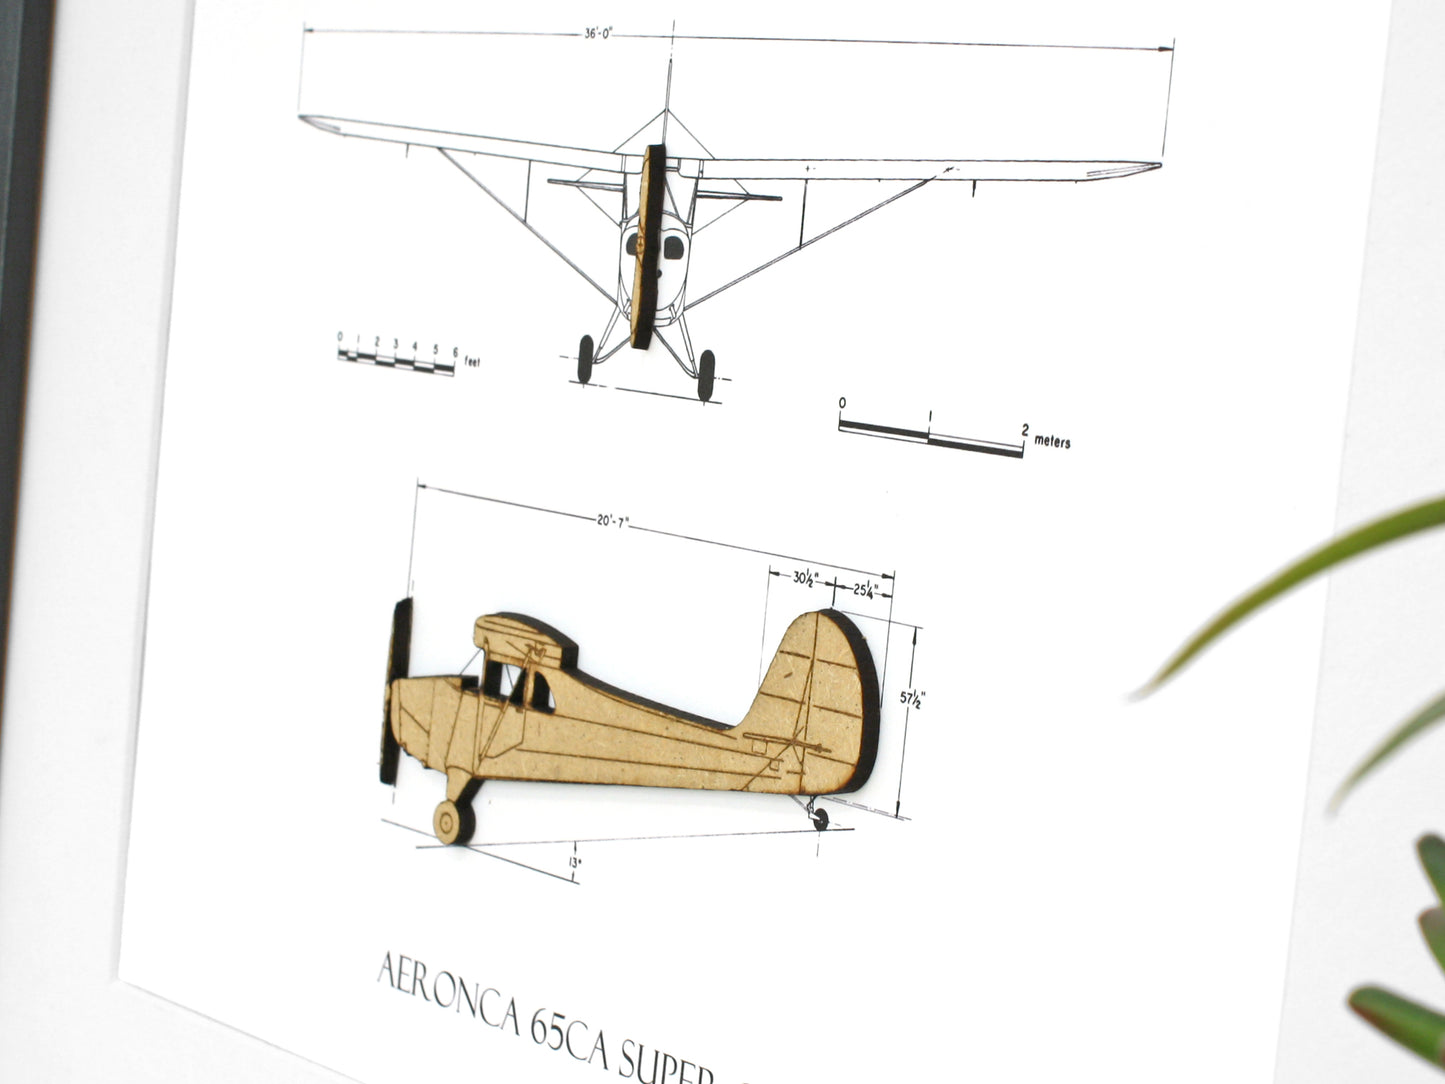 Aeronca 65CA Super Chief blueprint art